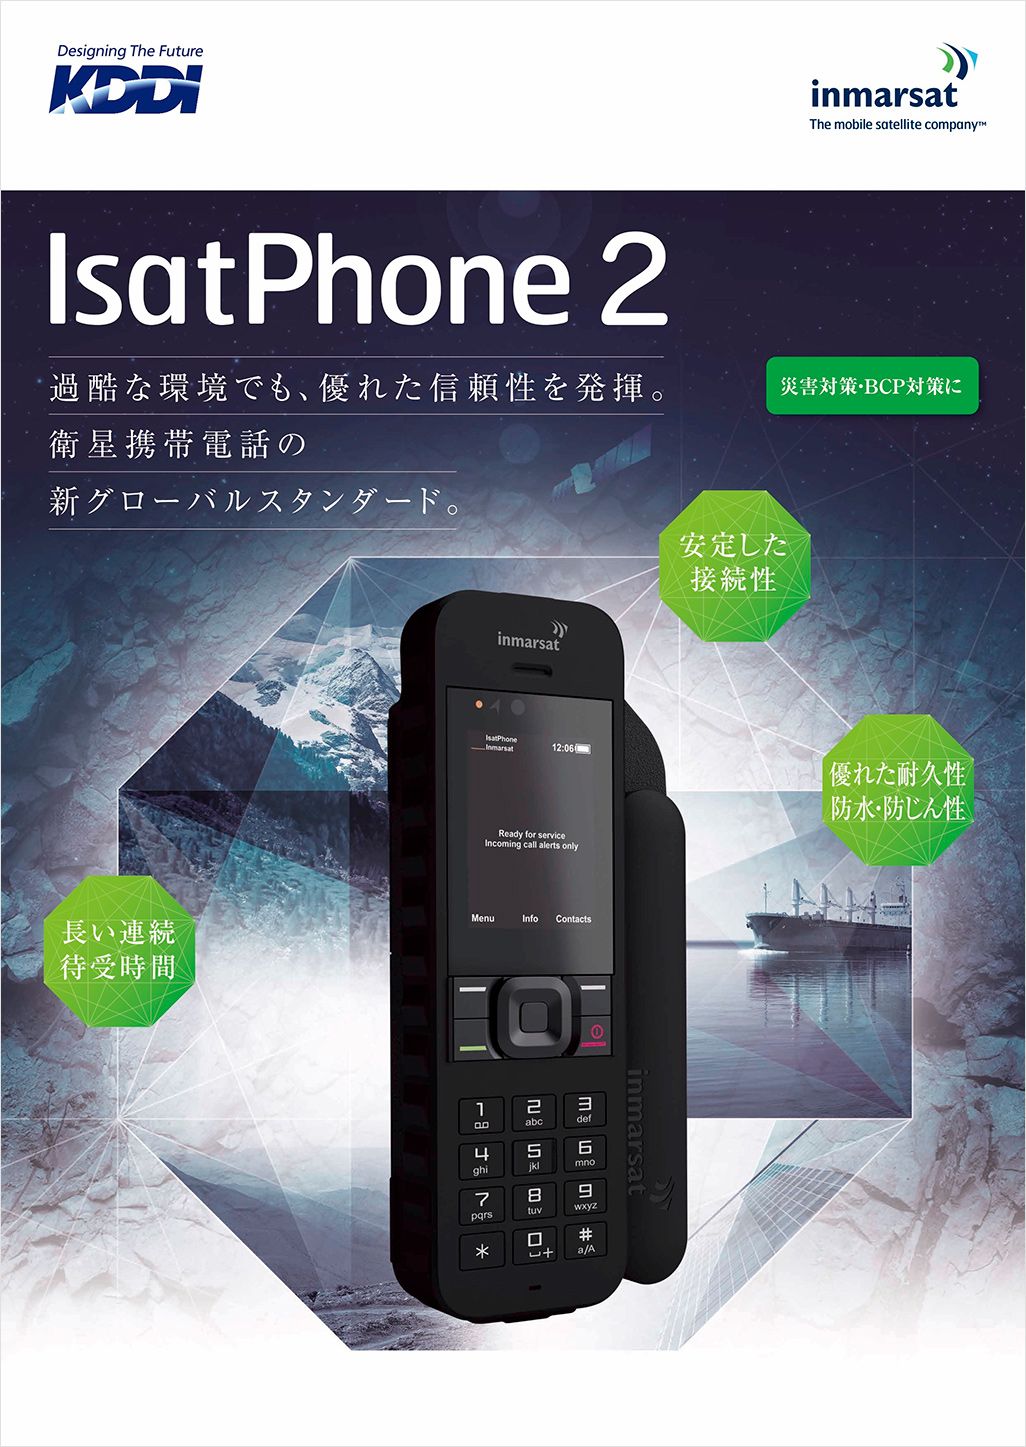 インマルサットの衛星携帯電話「IsatPhone 2」